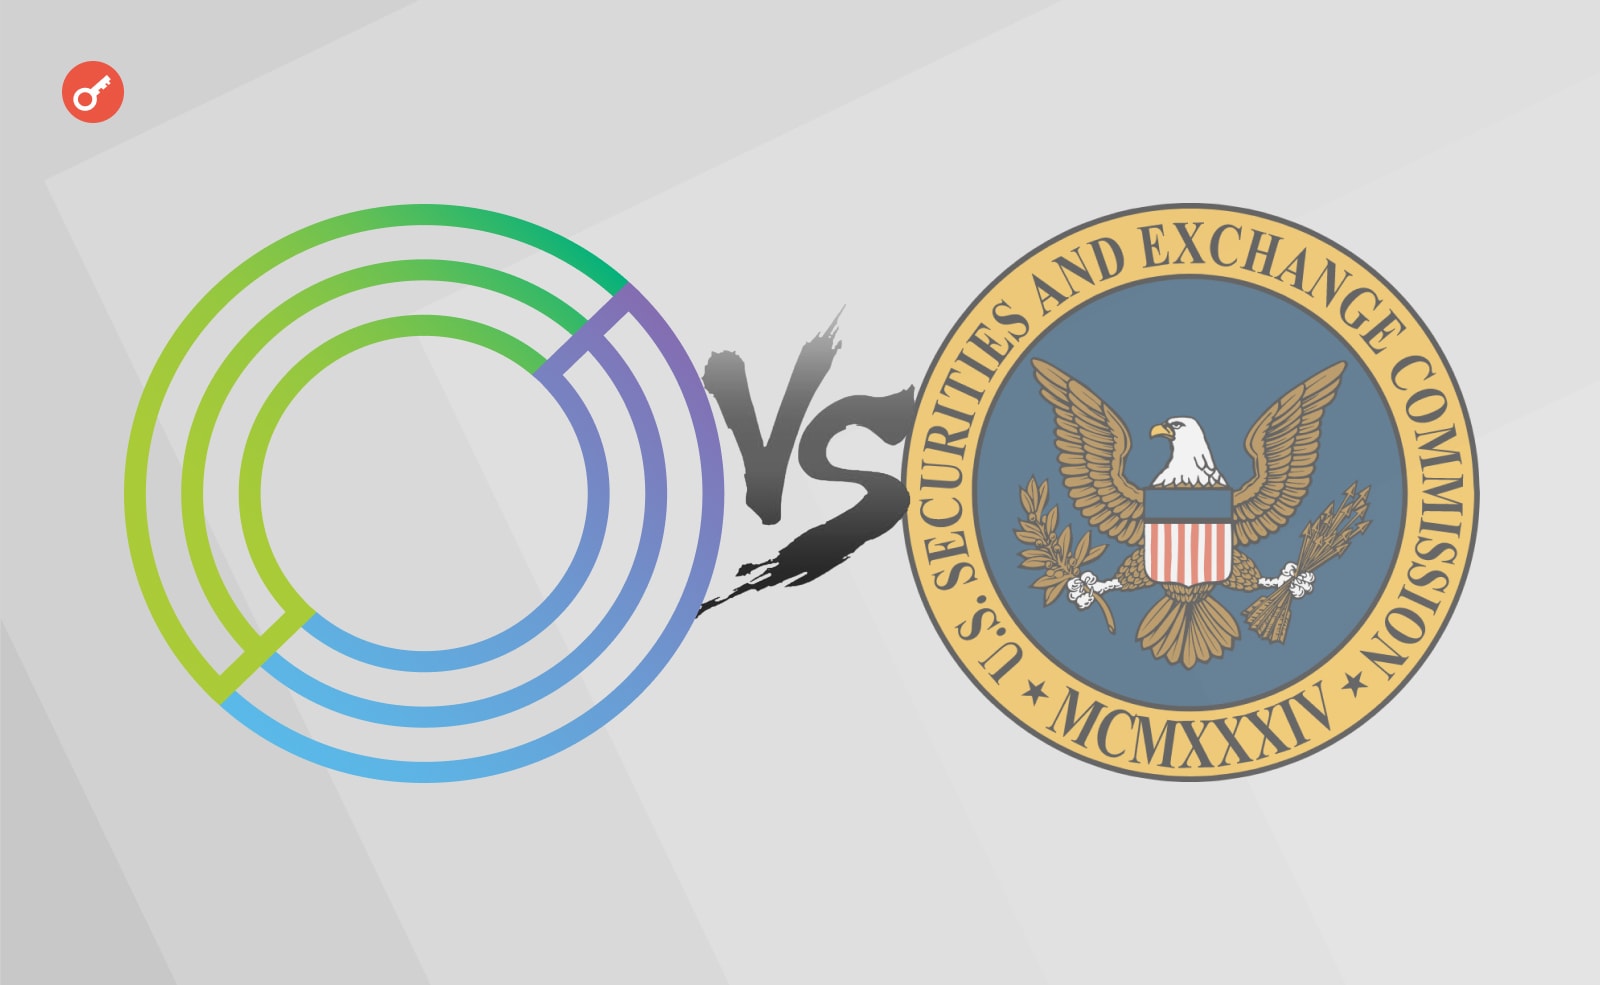 SEC цілеспрямовано припинила спроби Circle вийти на фондову біржу. У компанії це заперечують. Головний колаж новини.